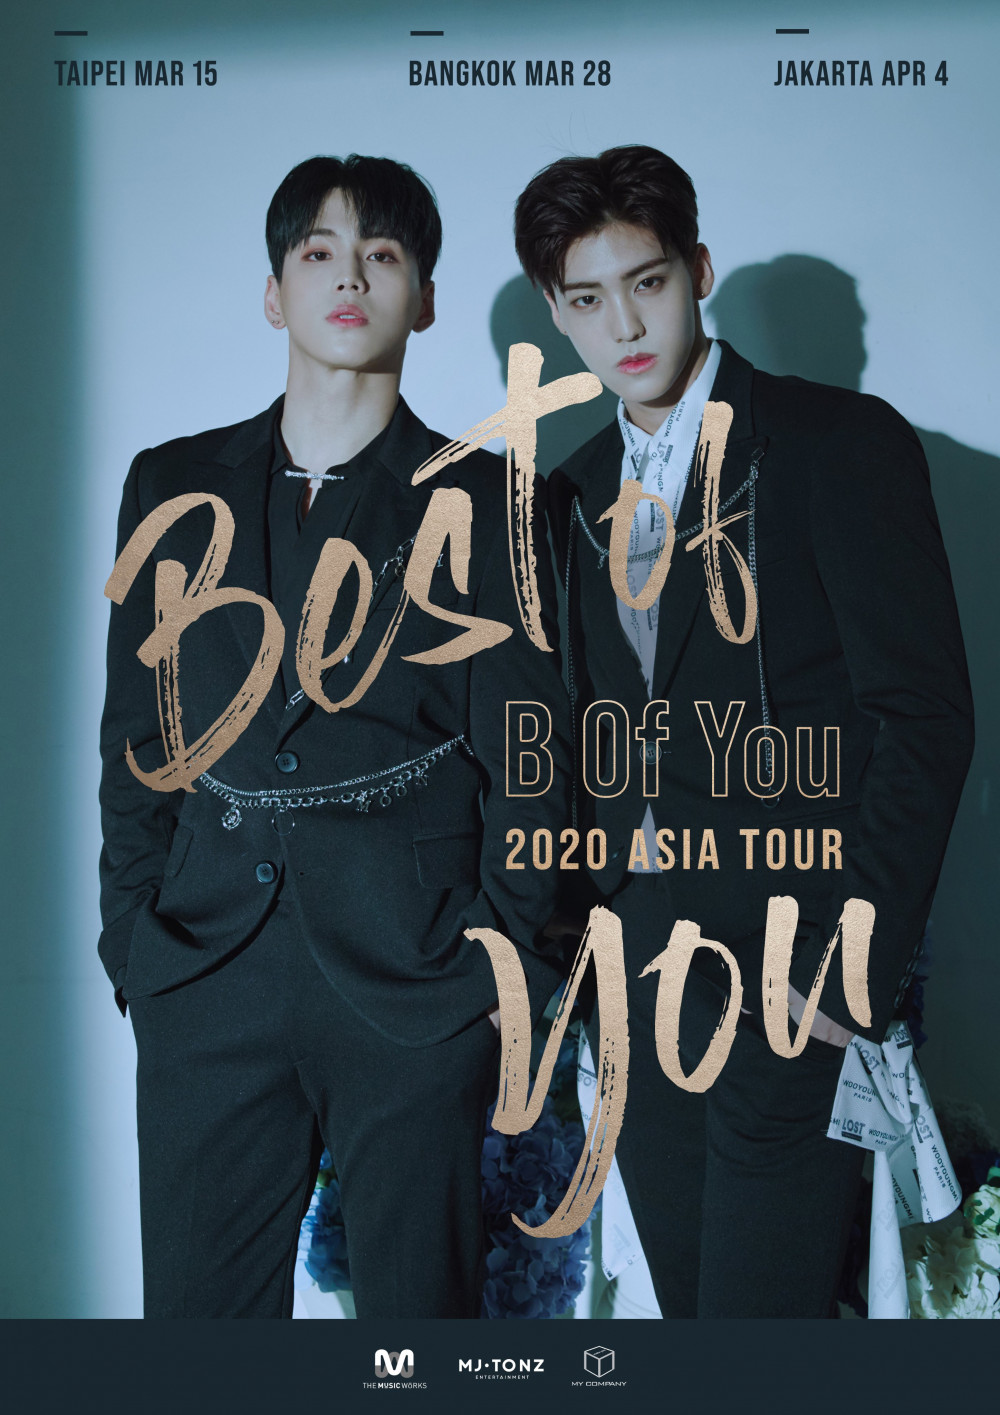 B.O.Y анонсировали постер к их предстоящему азиатскому туру "Best Of You"